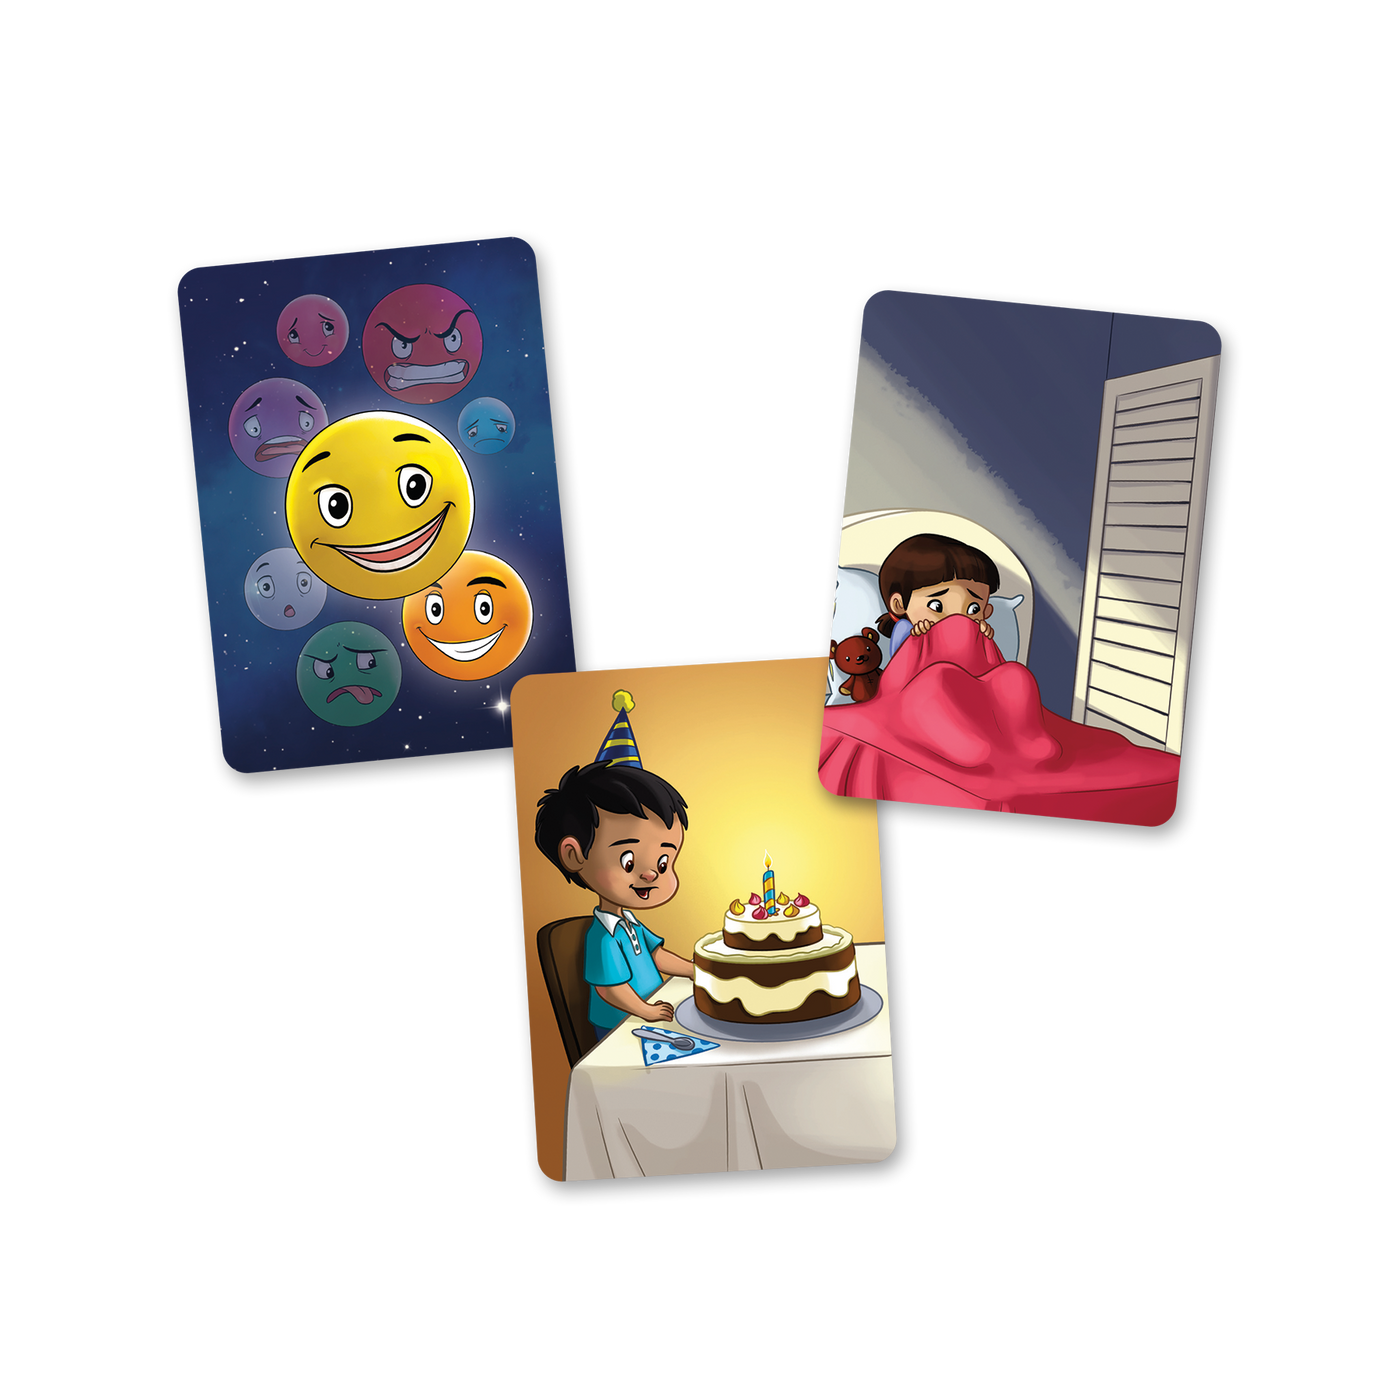 La planète des émotions - Exemples de cartes-situations : fille apeurée dans son lit, garçon heureux devant un gâteau de fête